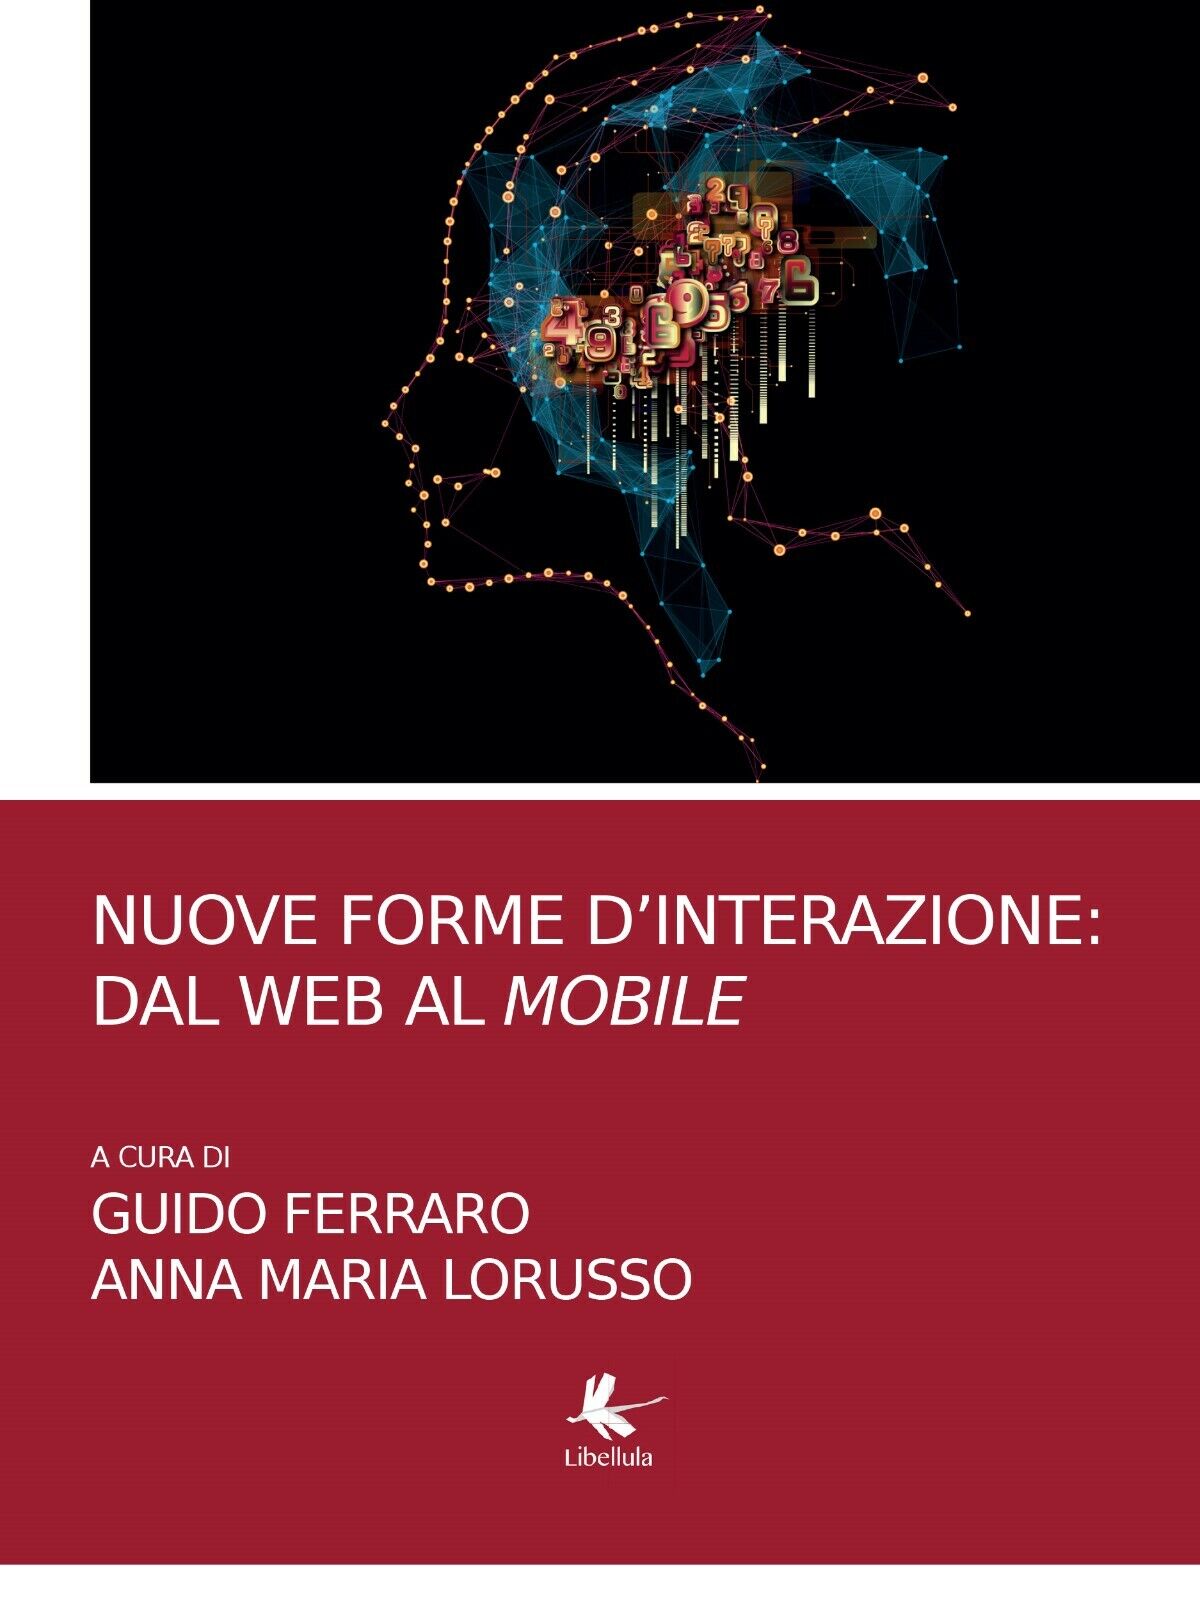 Nuove forme d'interazione: dal web al mobile, G. Ferraro, A. M. Lorusso